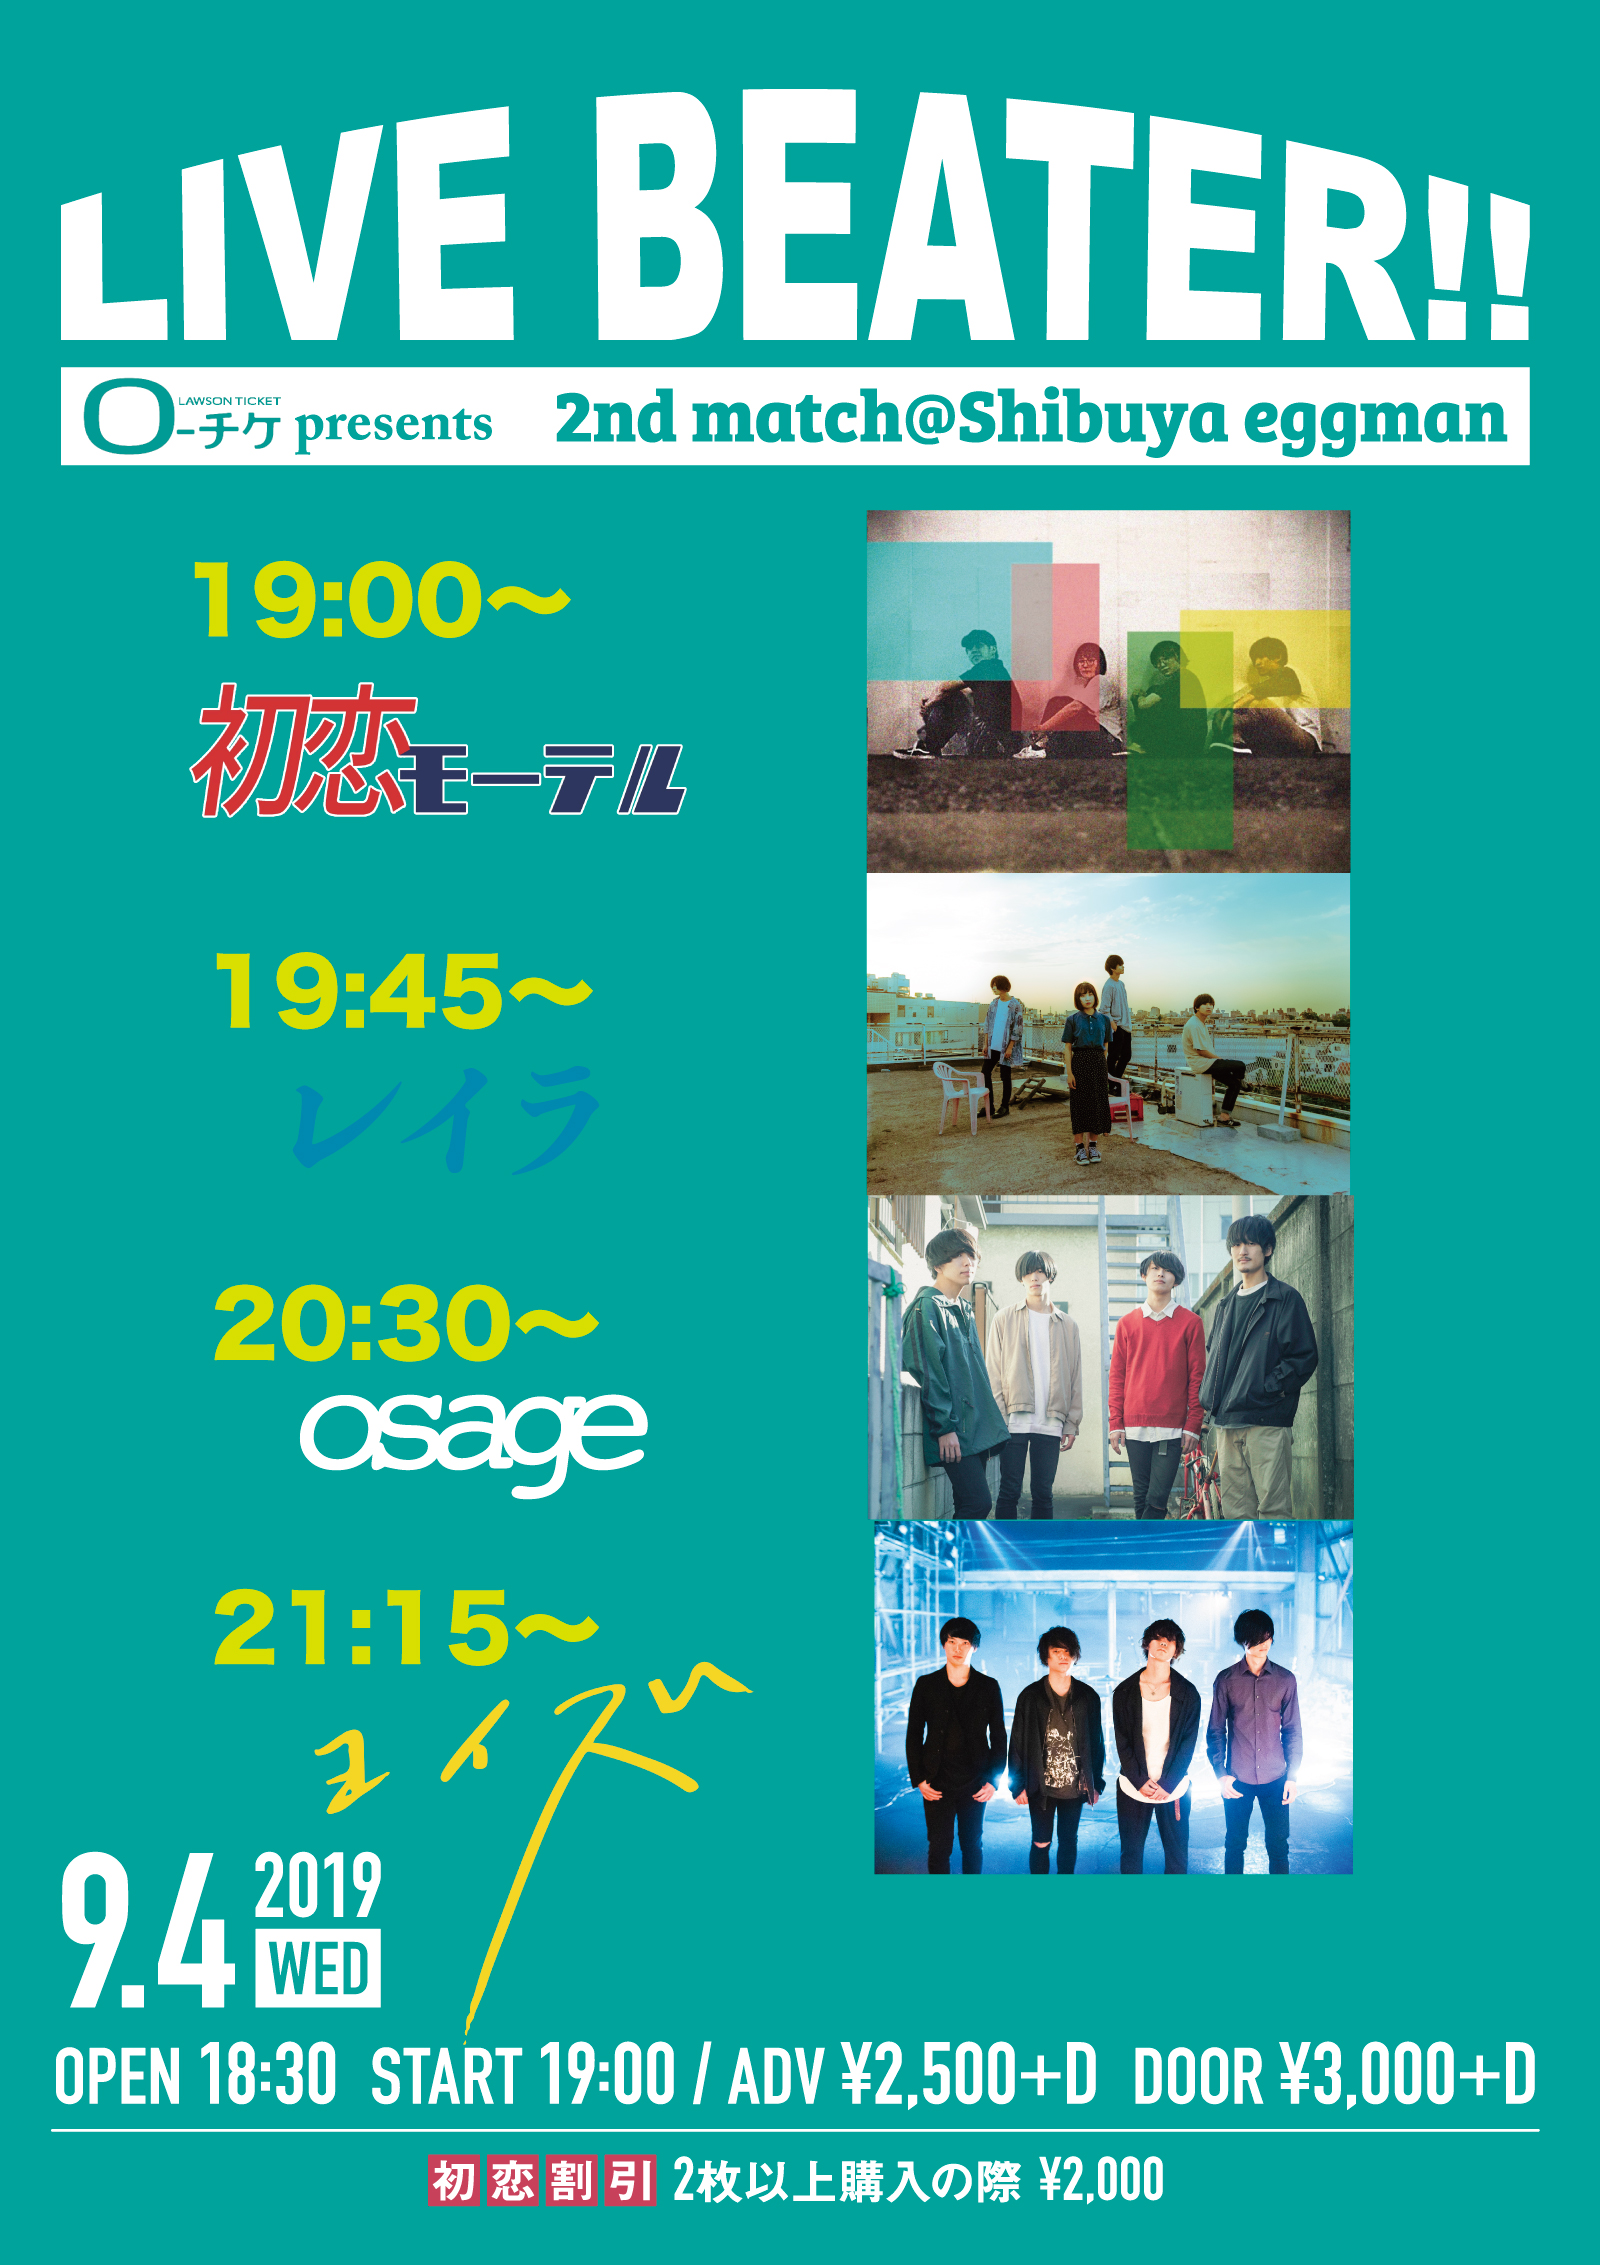 ローチケpresents LIVE BEATER!! 2nd match